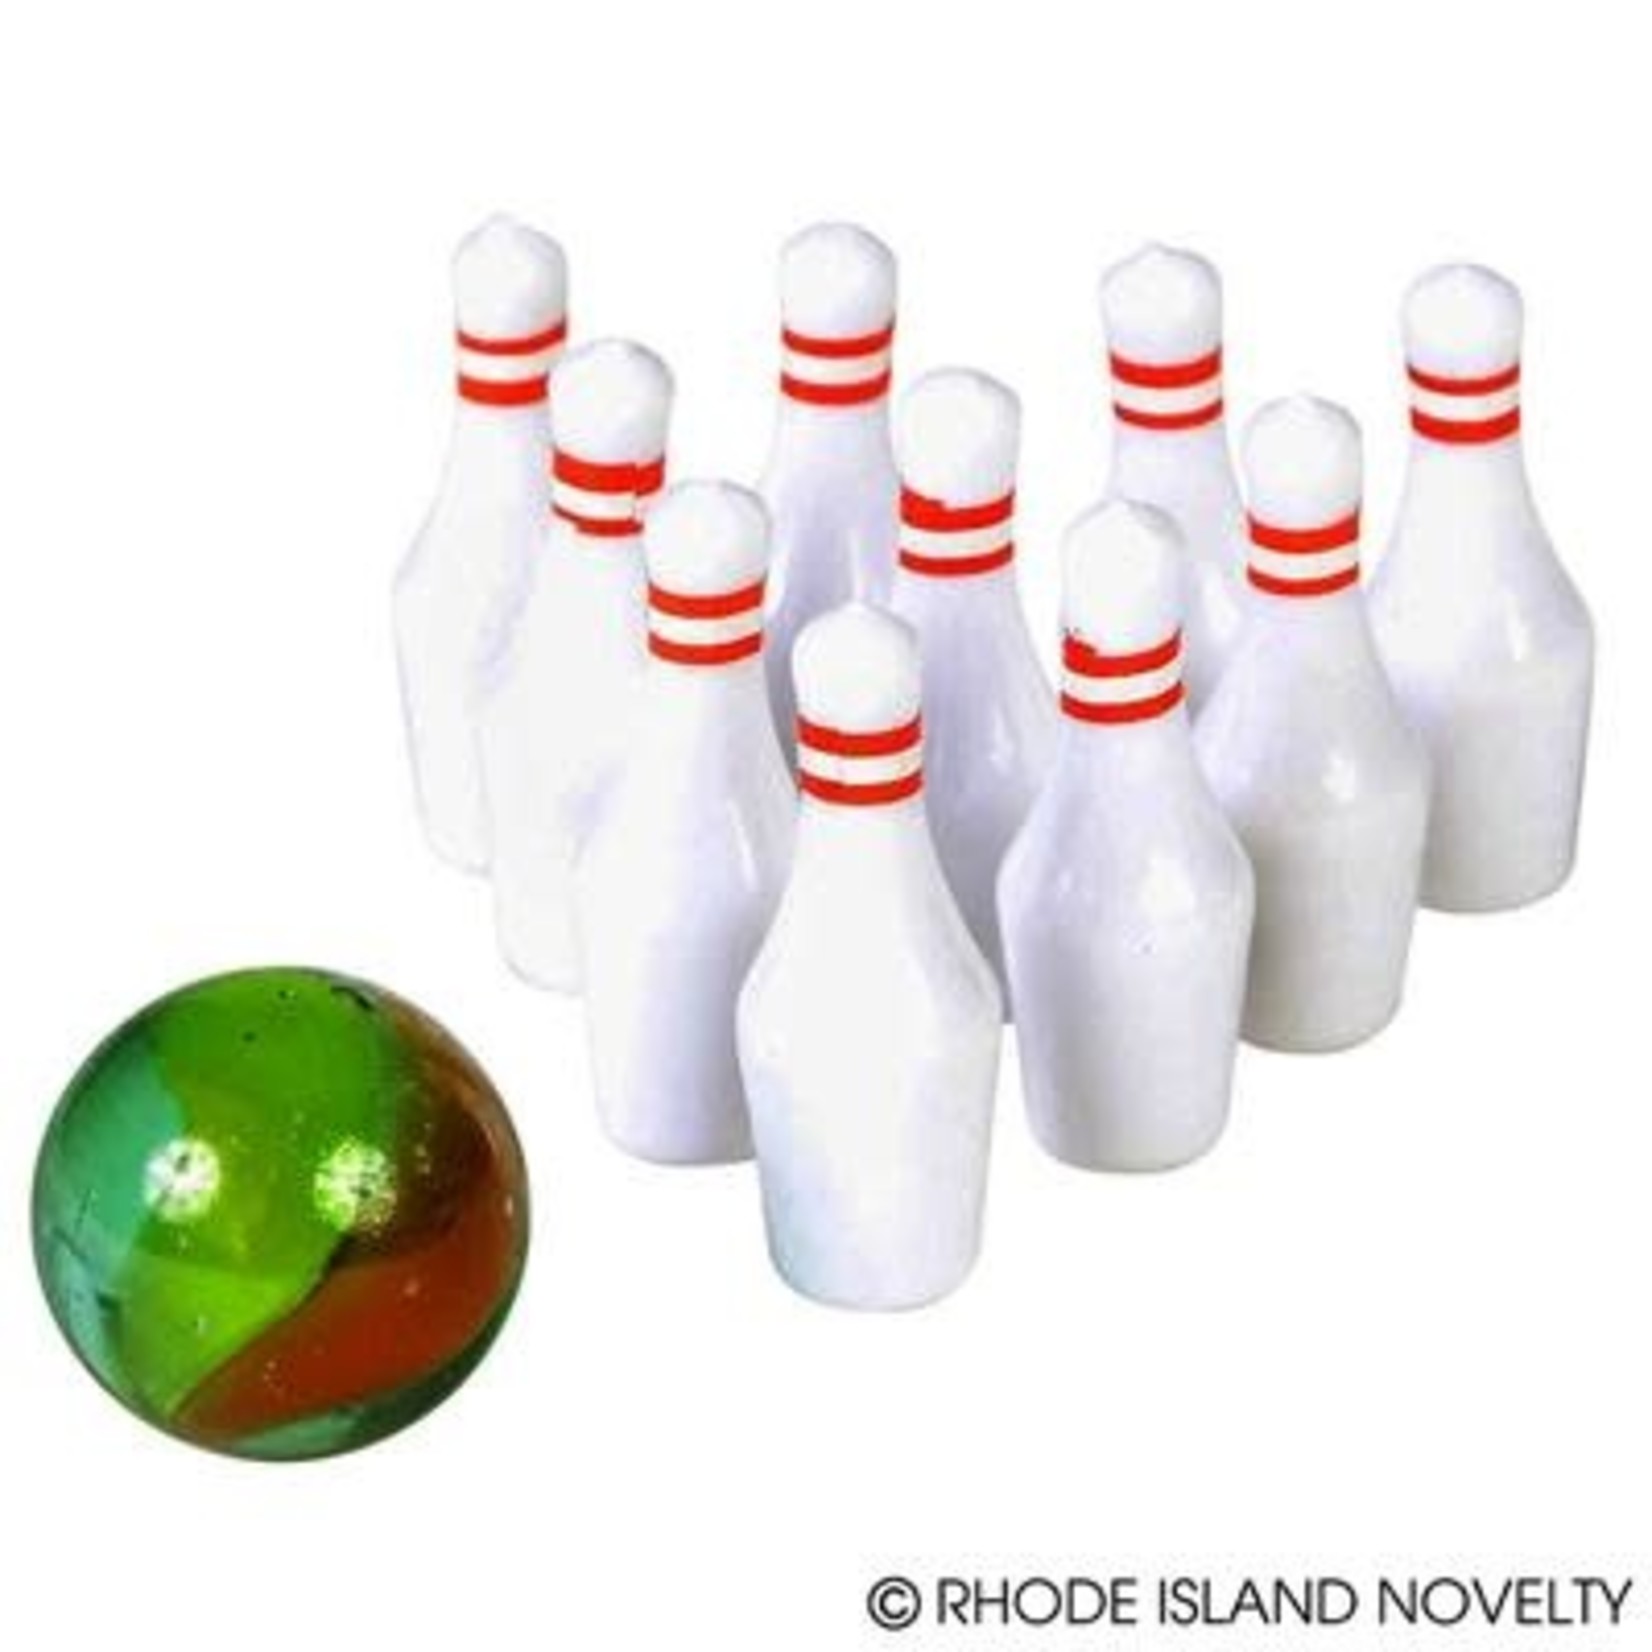 RHODE ISLAND NOVELTY Miniature Bowling Set - 1ct.